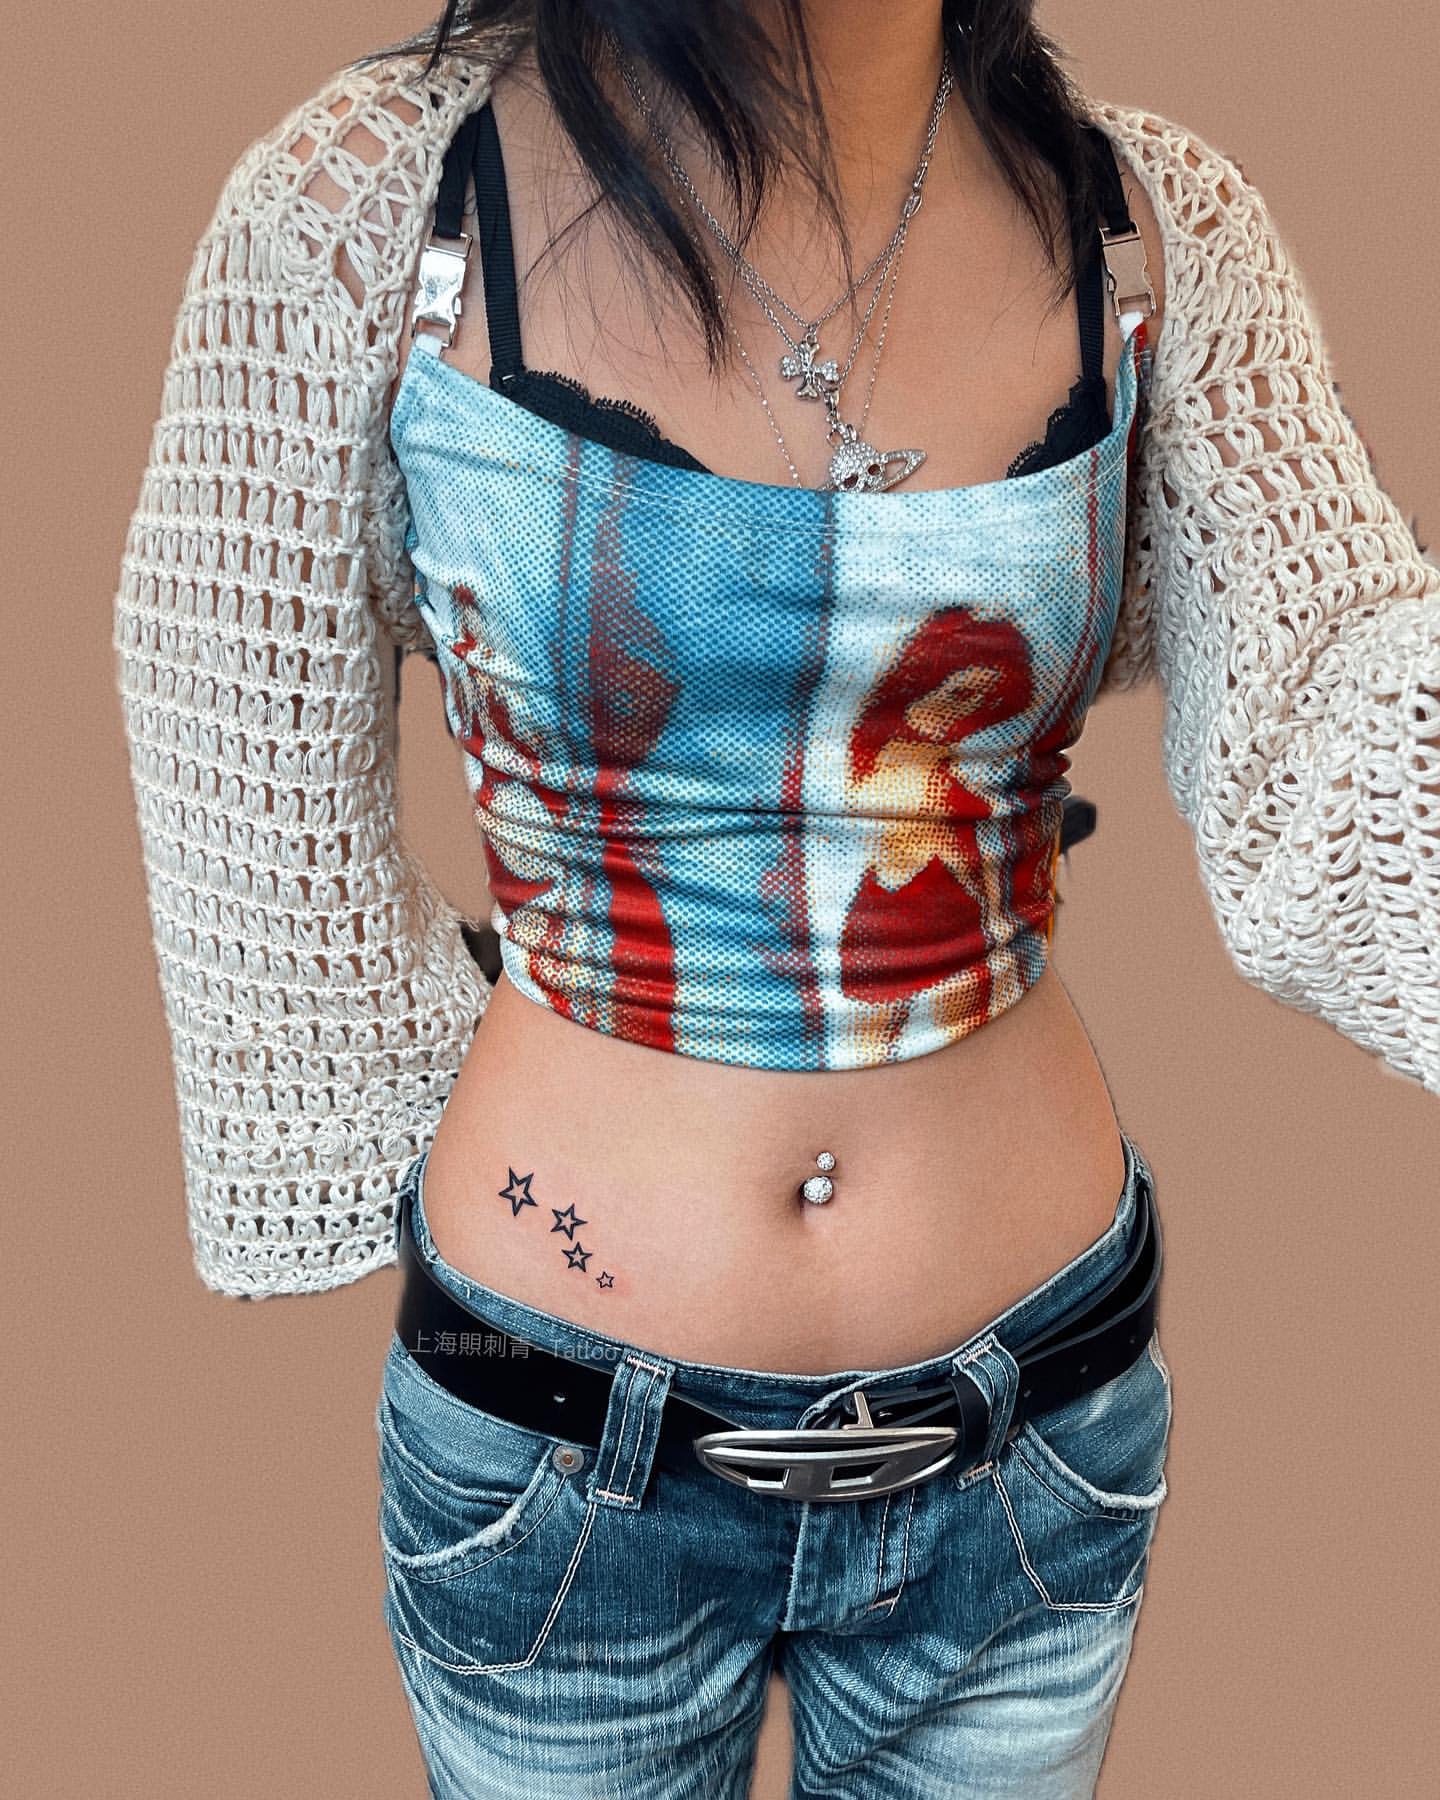 Tattoo Ideas For Women, star tattoo